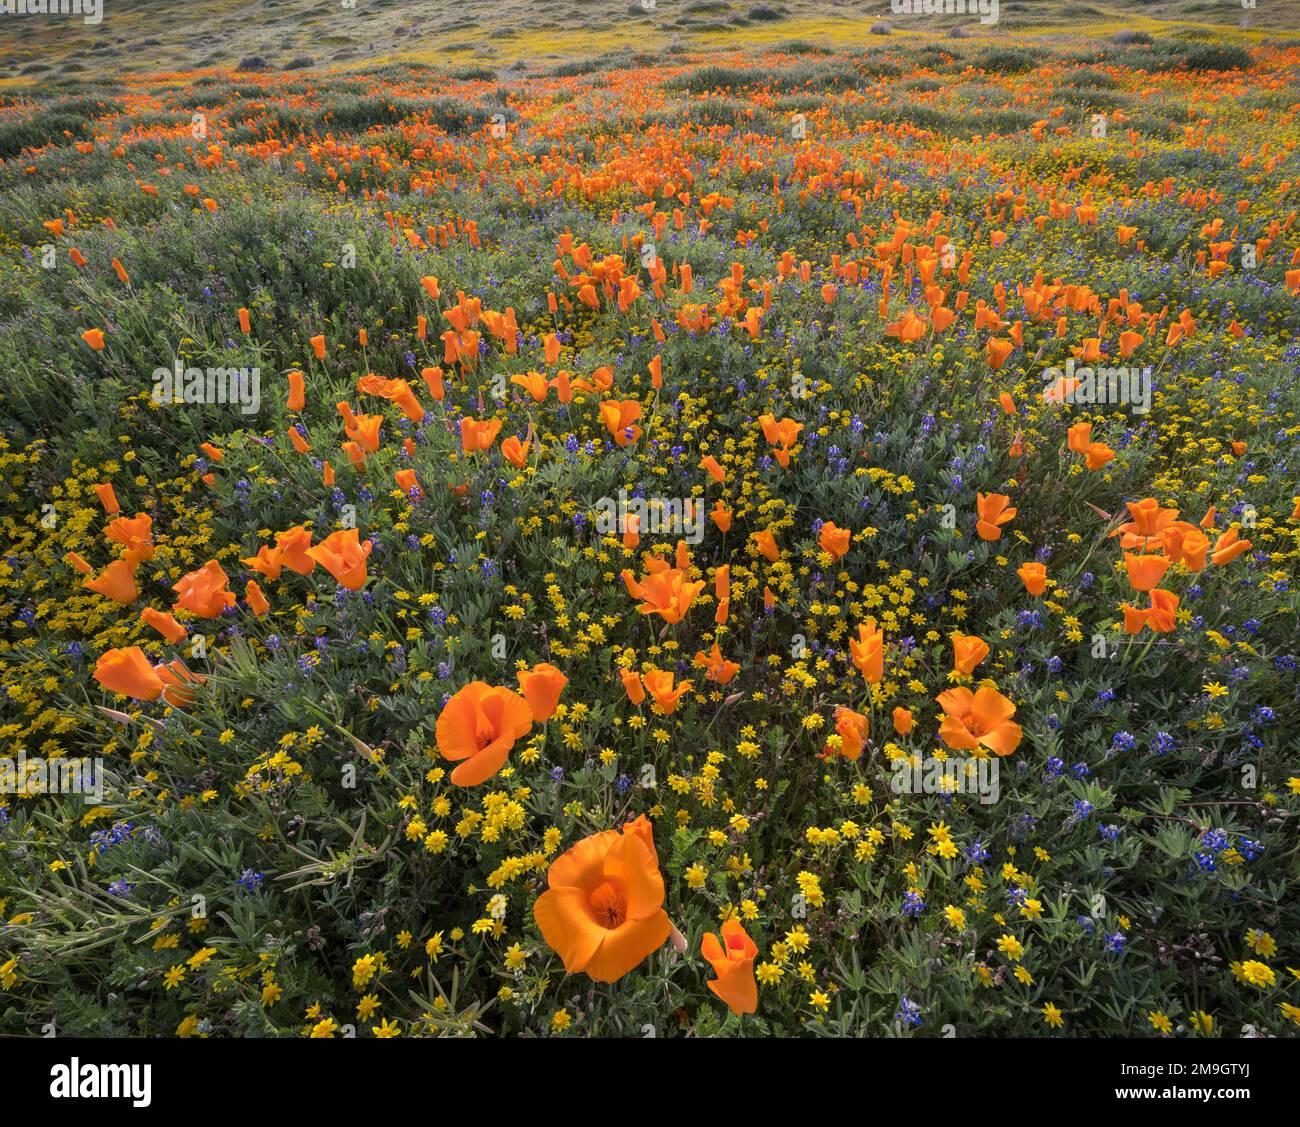 Landschaft mit kalifornischem Mohn (Eschscholzia californica), Antelope Valley California State Poppy Reserve, Kalifornien, USA Stockfoto